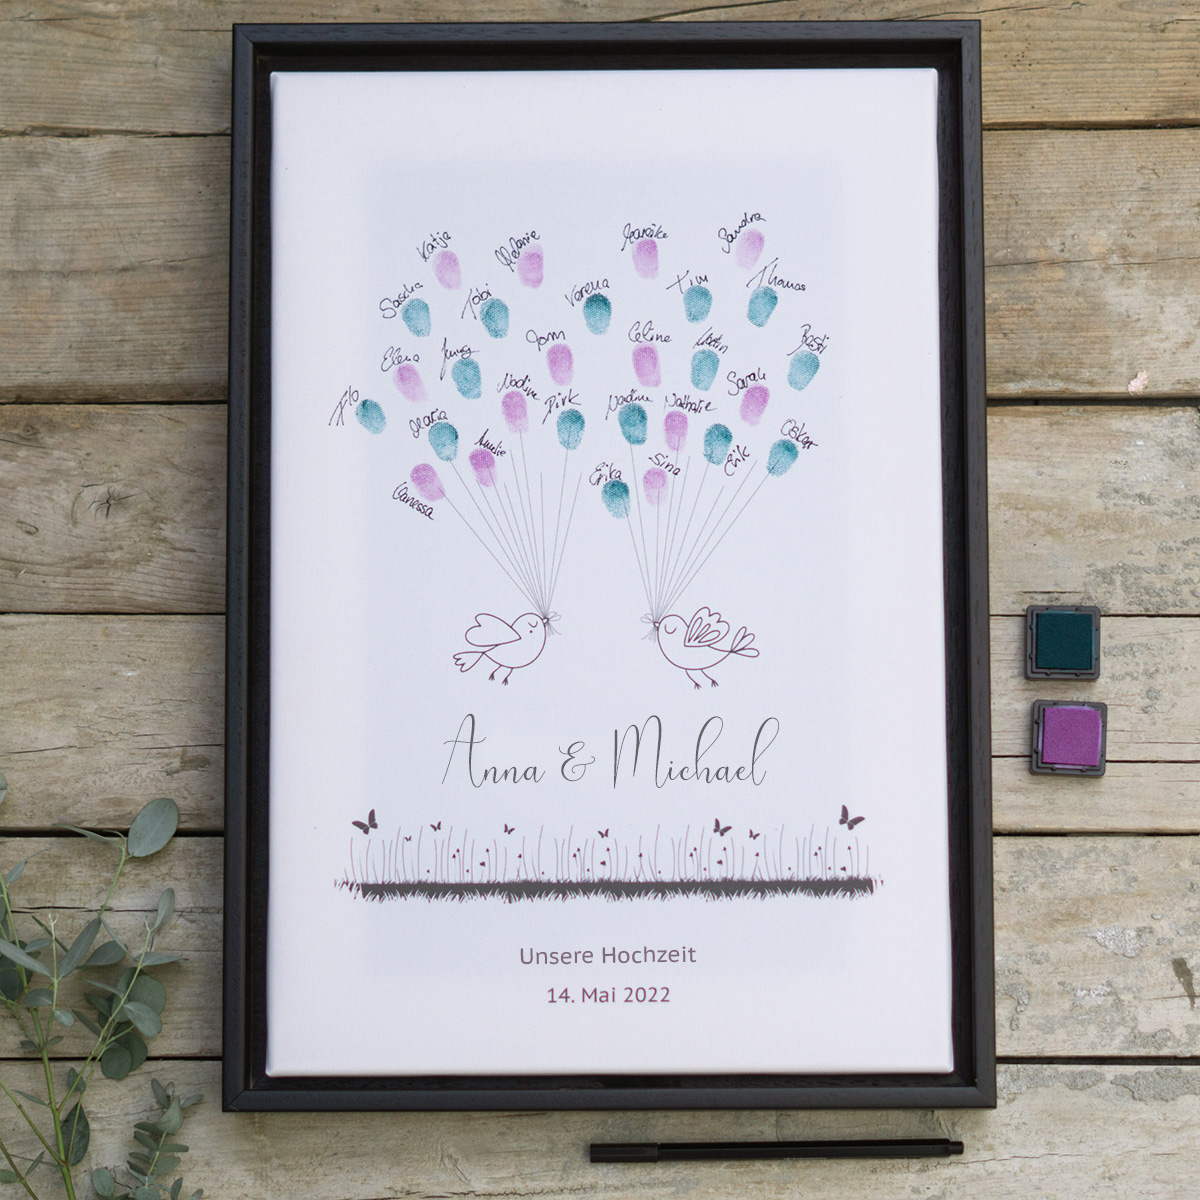 Wedding Tree Gästebuch Idee mit Fingerabdrücken für die Hochzeitsfeier